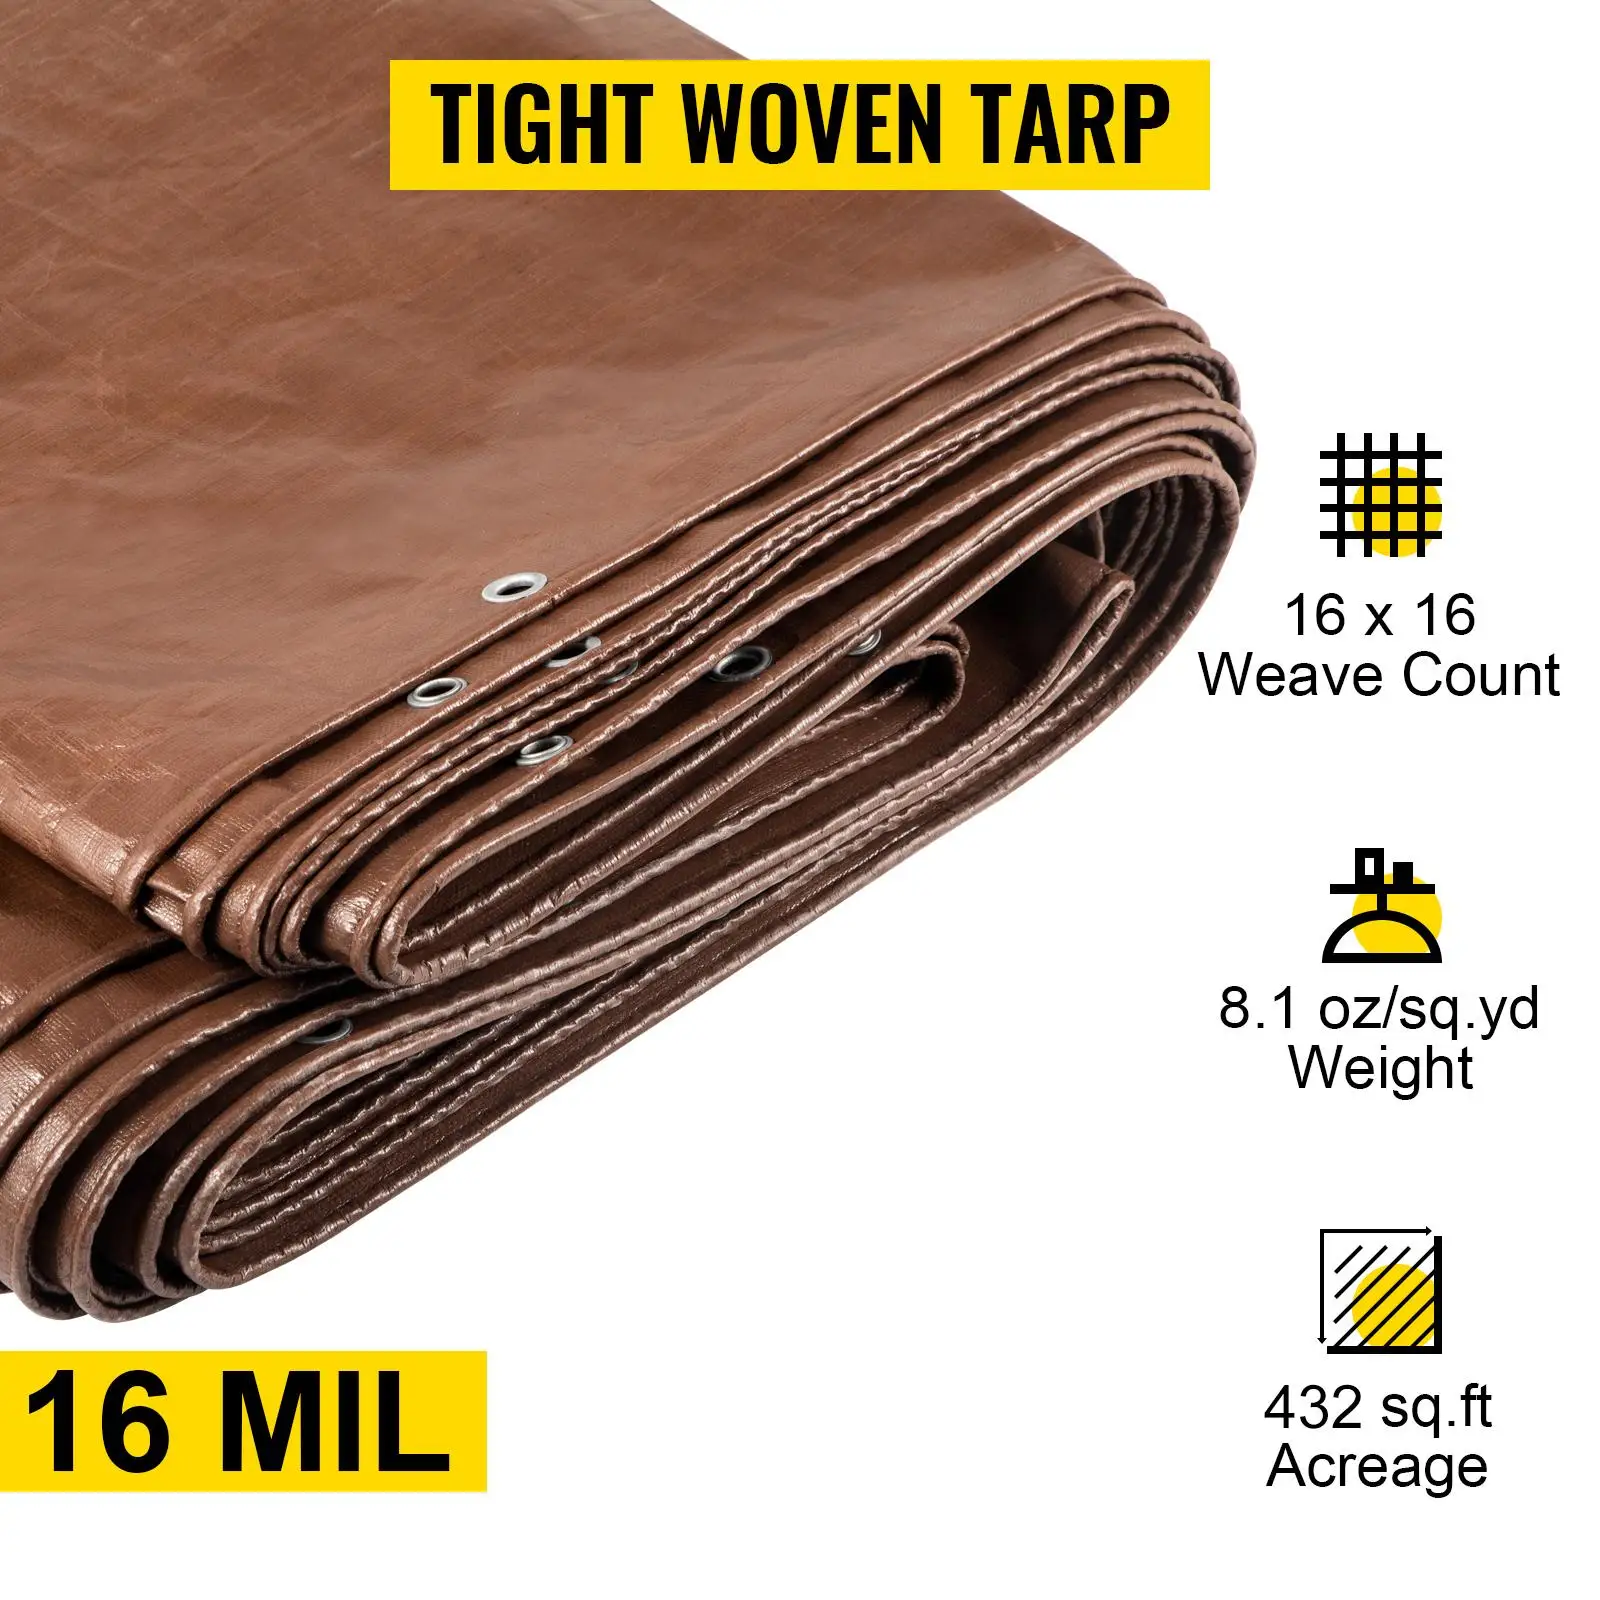 Heavy-duty waterproof tarp